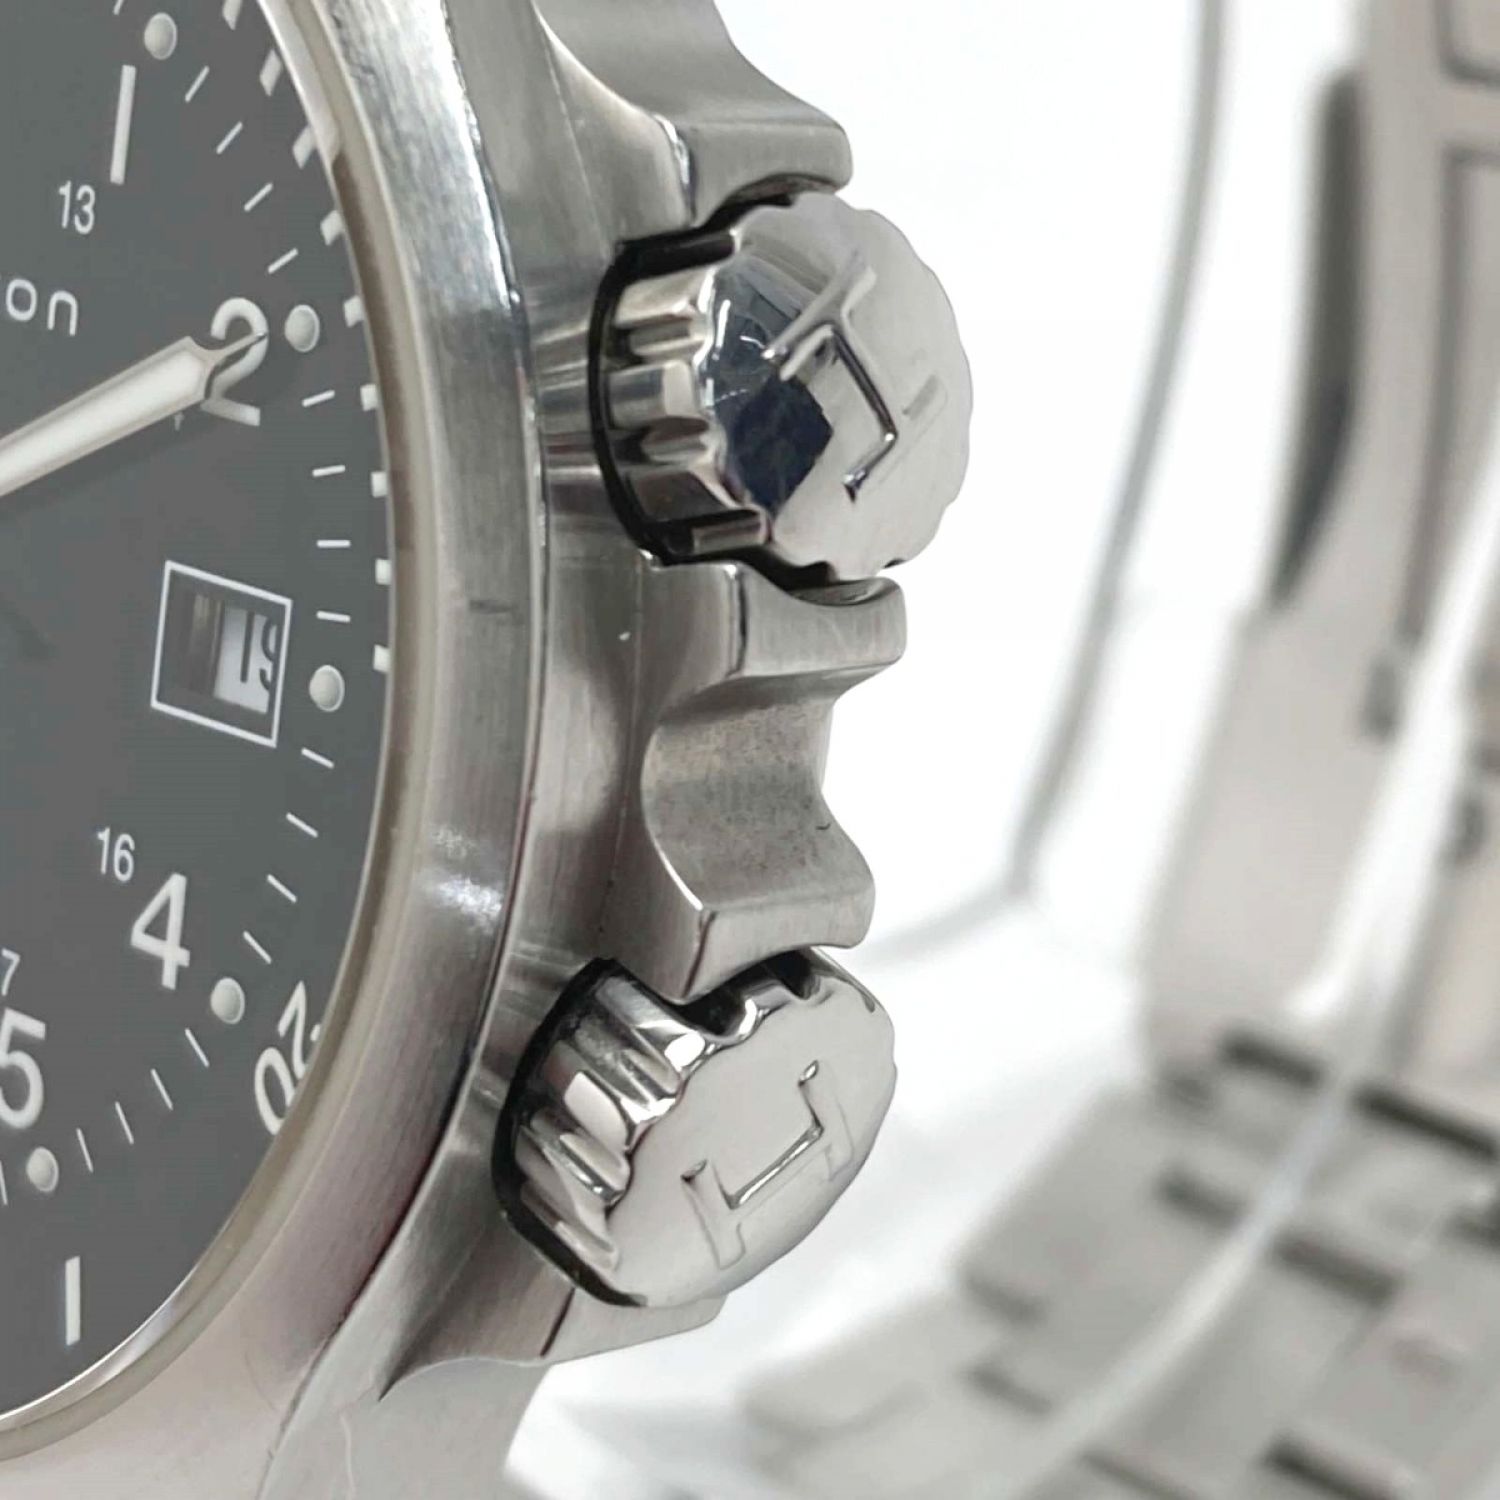 HAMILTON ハミルトン メンズ腕時計 カーキ アビエーション パイロット ブラック文字盤 右腕用 自動巻き 未使用品